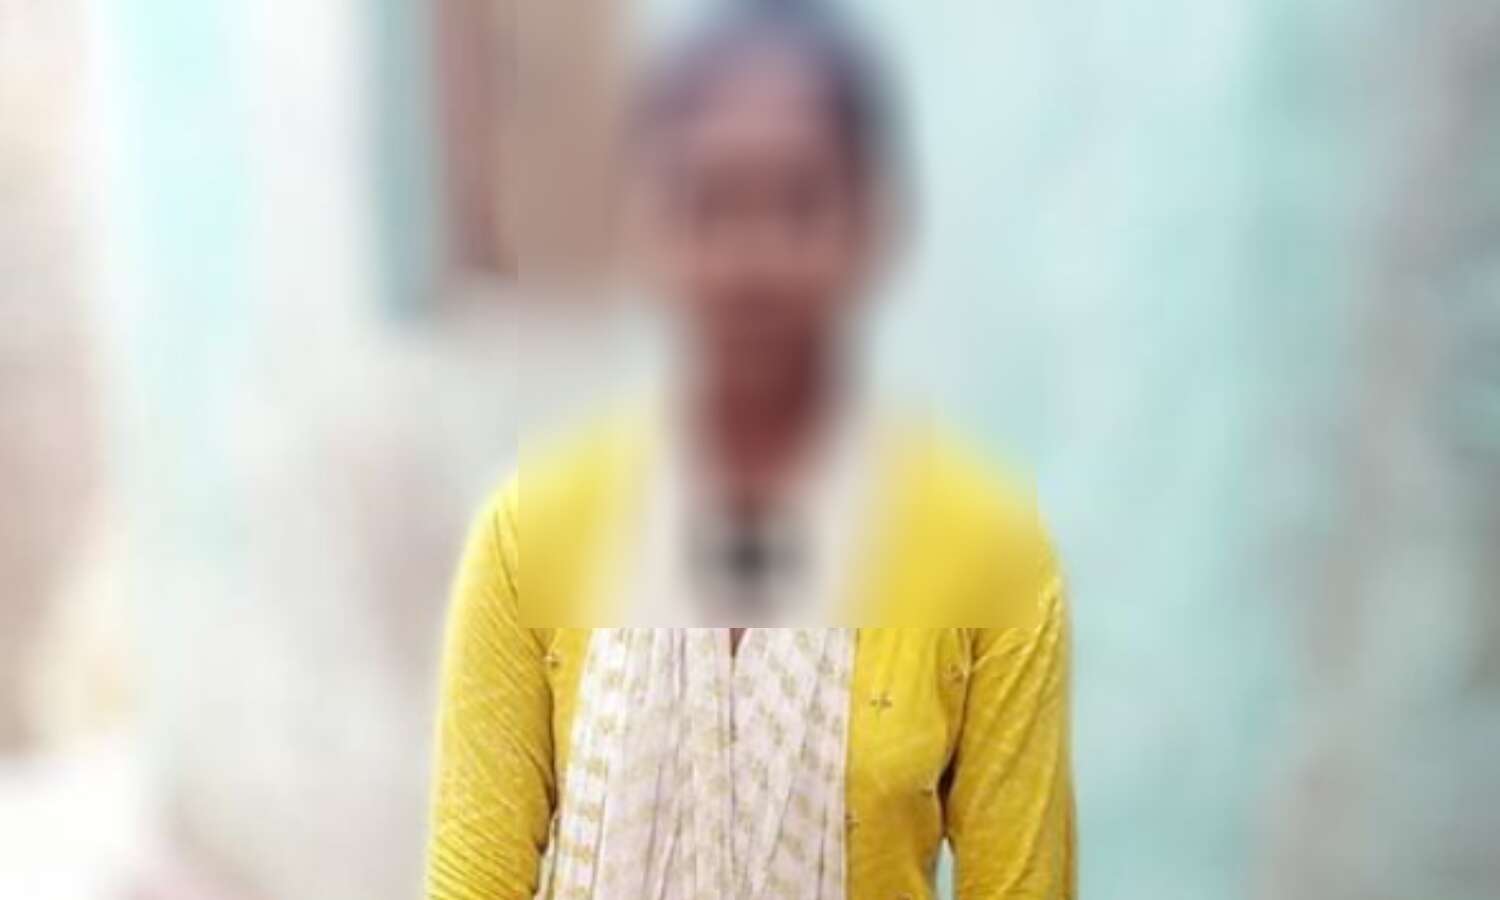 Bihar News : छात्रा ने फांसी लगाकर की आत्महत्या, परिवार पर कर्ज से थी परेशान